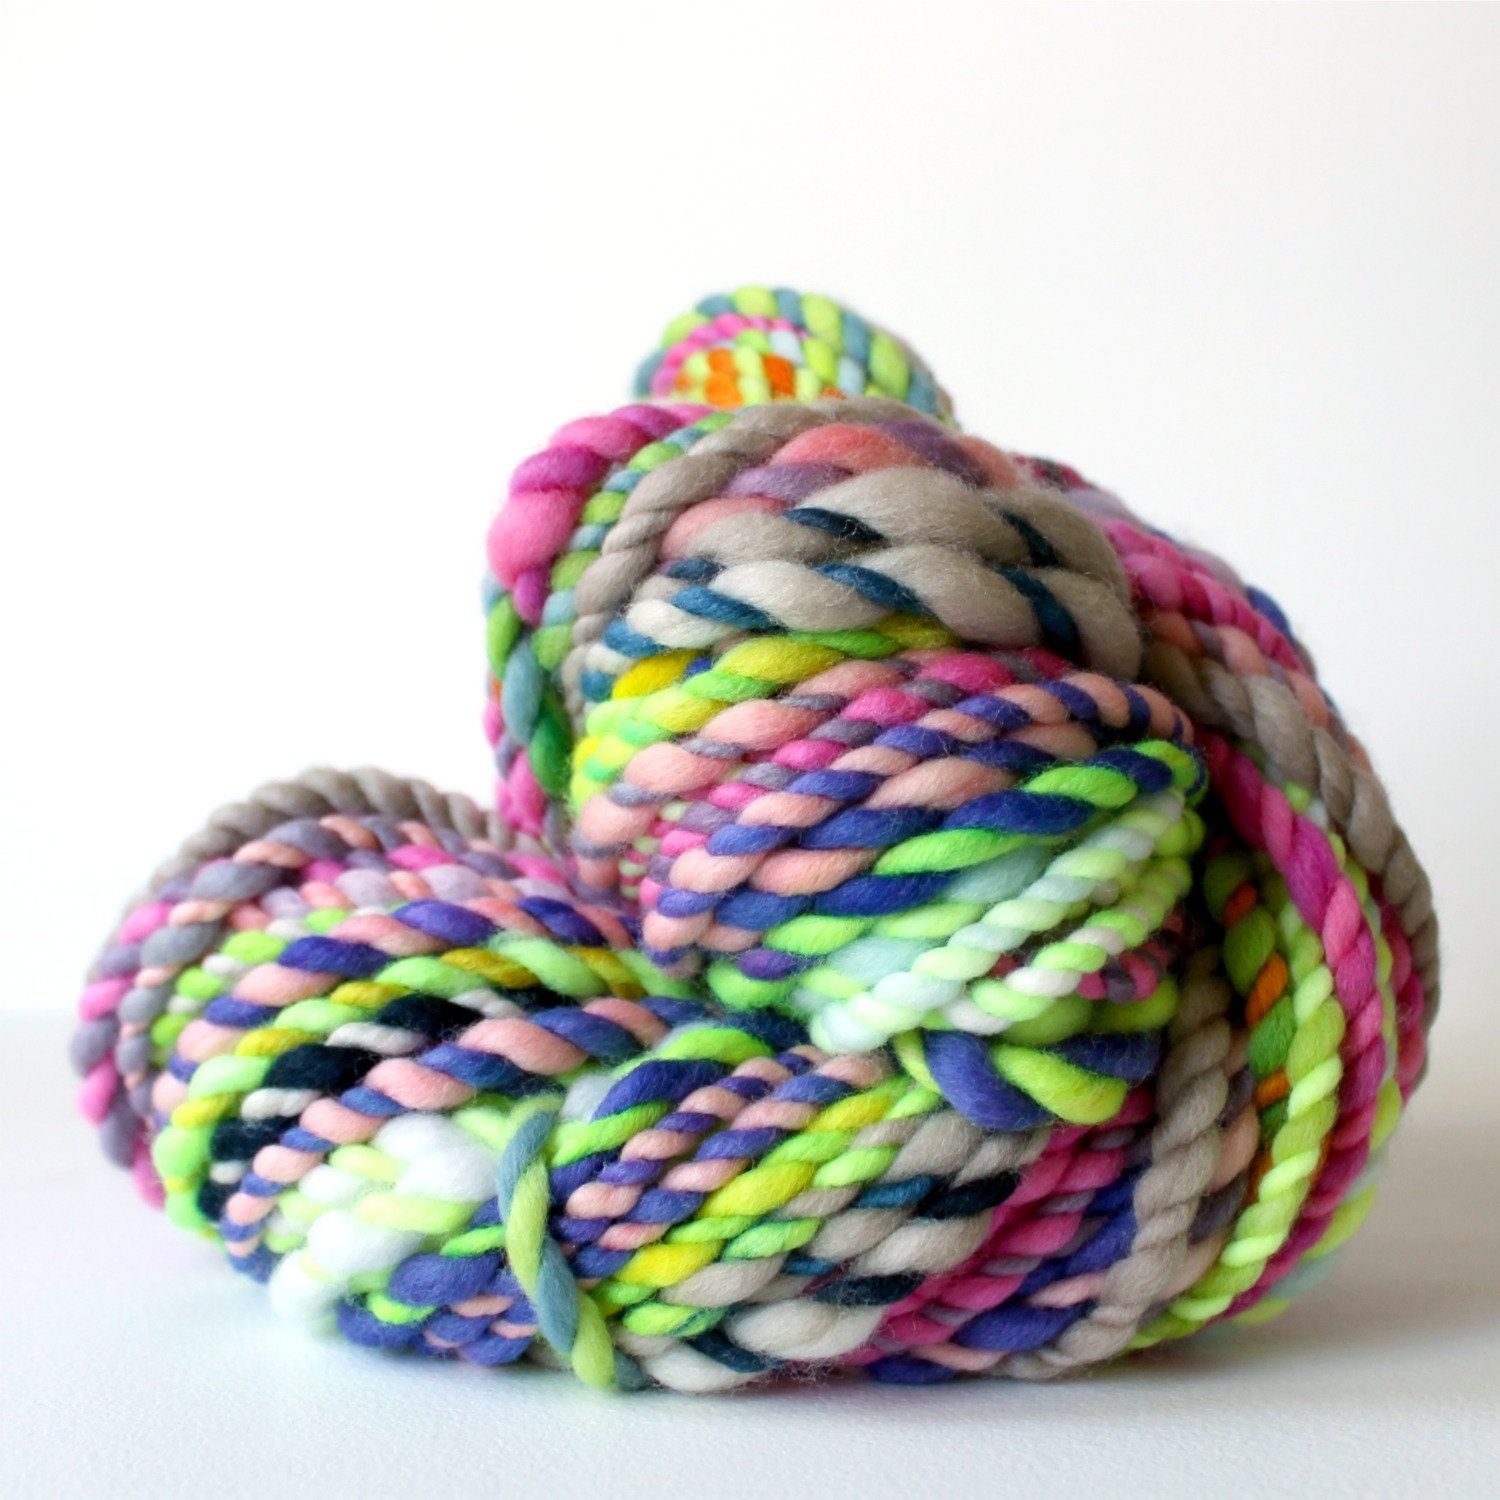 yarn wool yarn handspun yarn hand spun yarn rainbow yarn